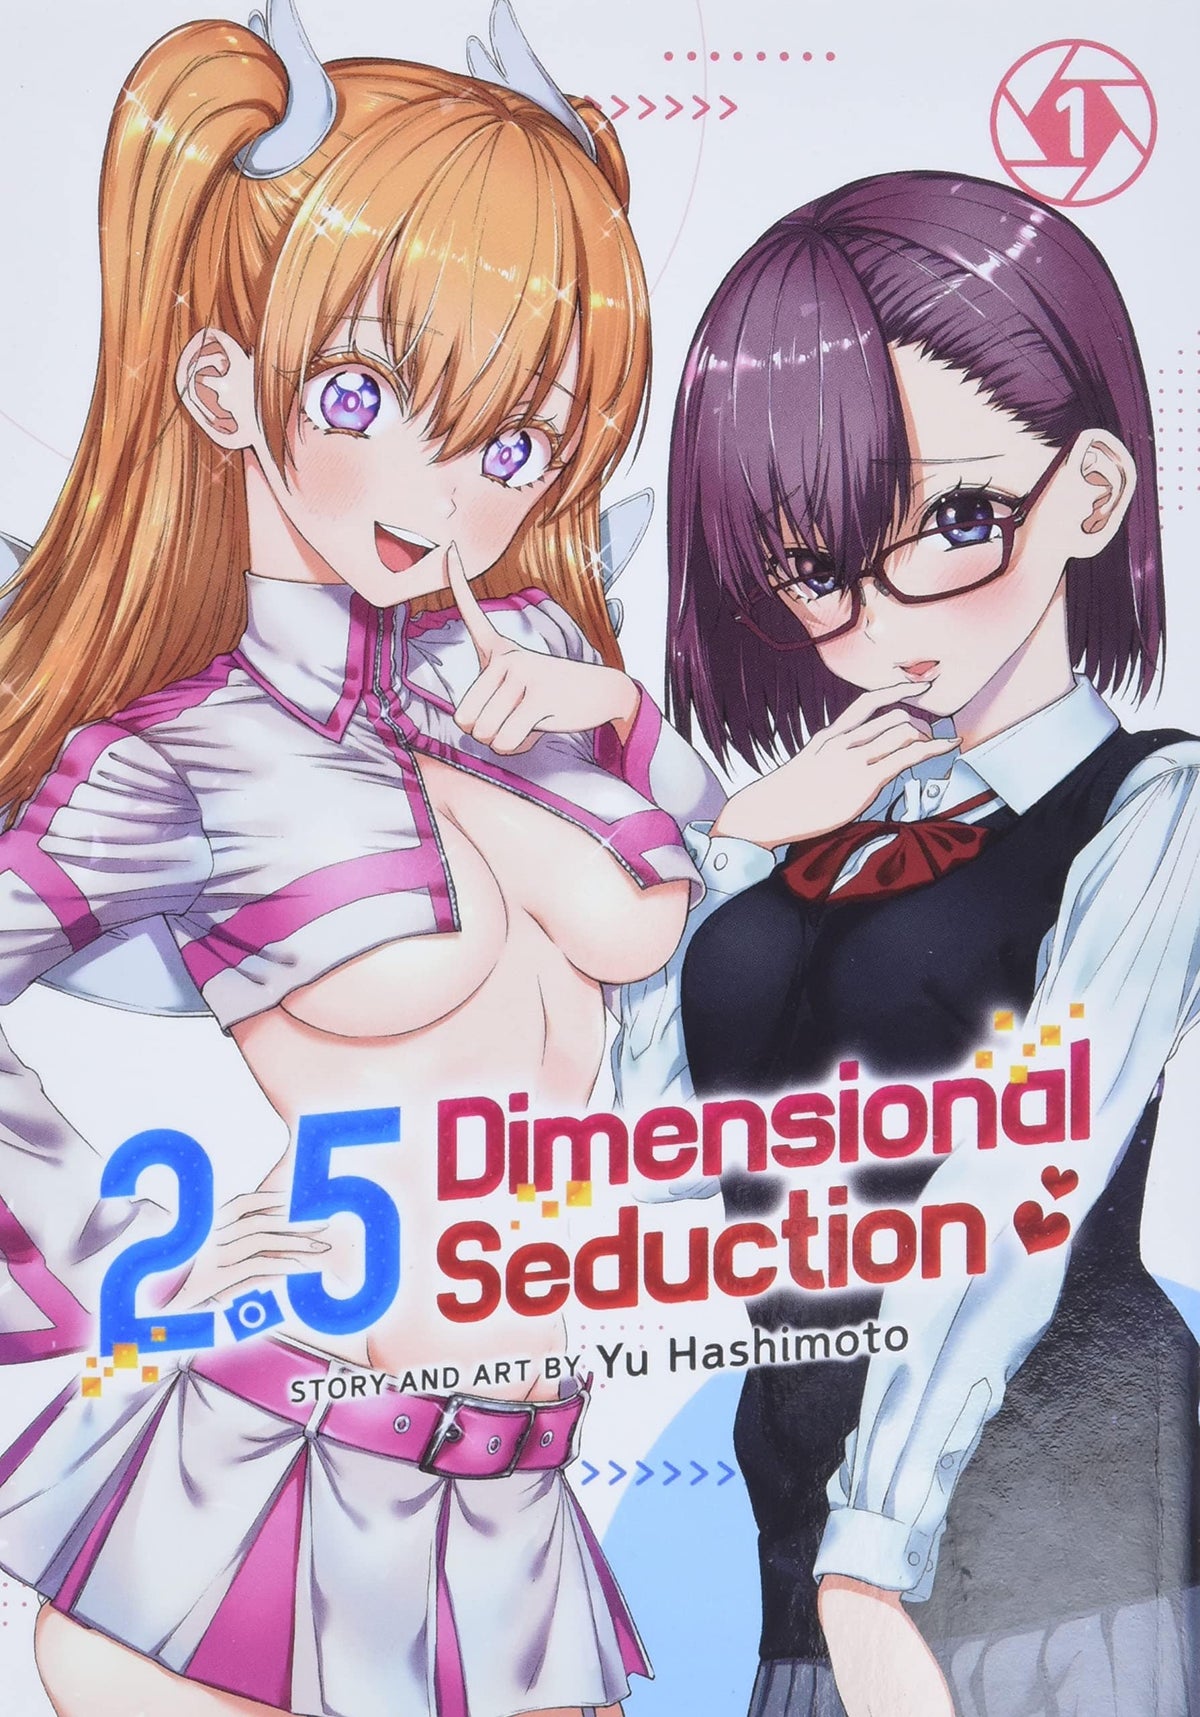 2.5 Dimensional Seduction Vol. 1 TP - Third Eye